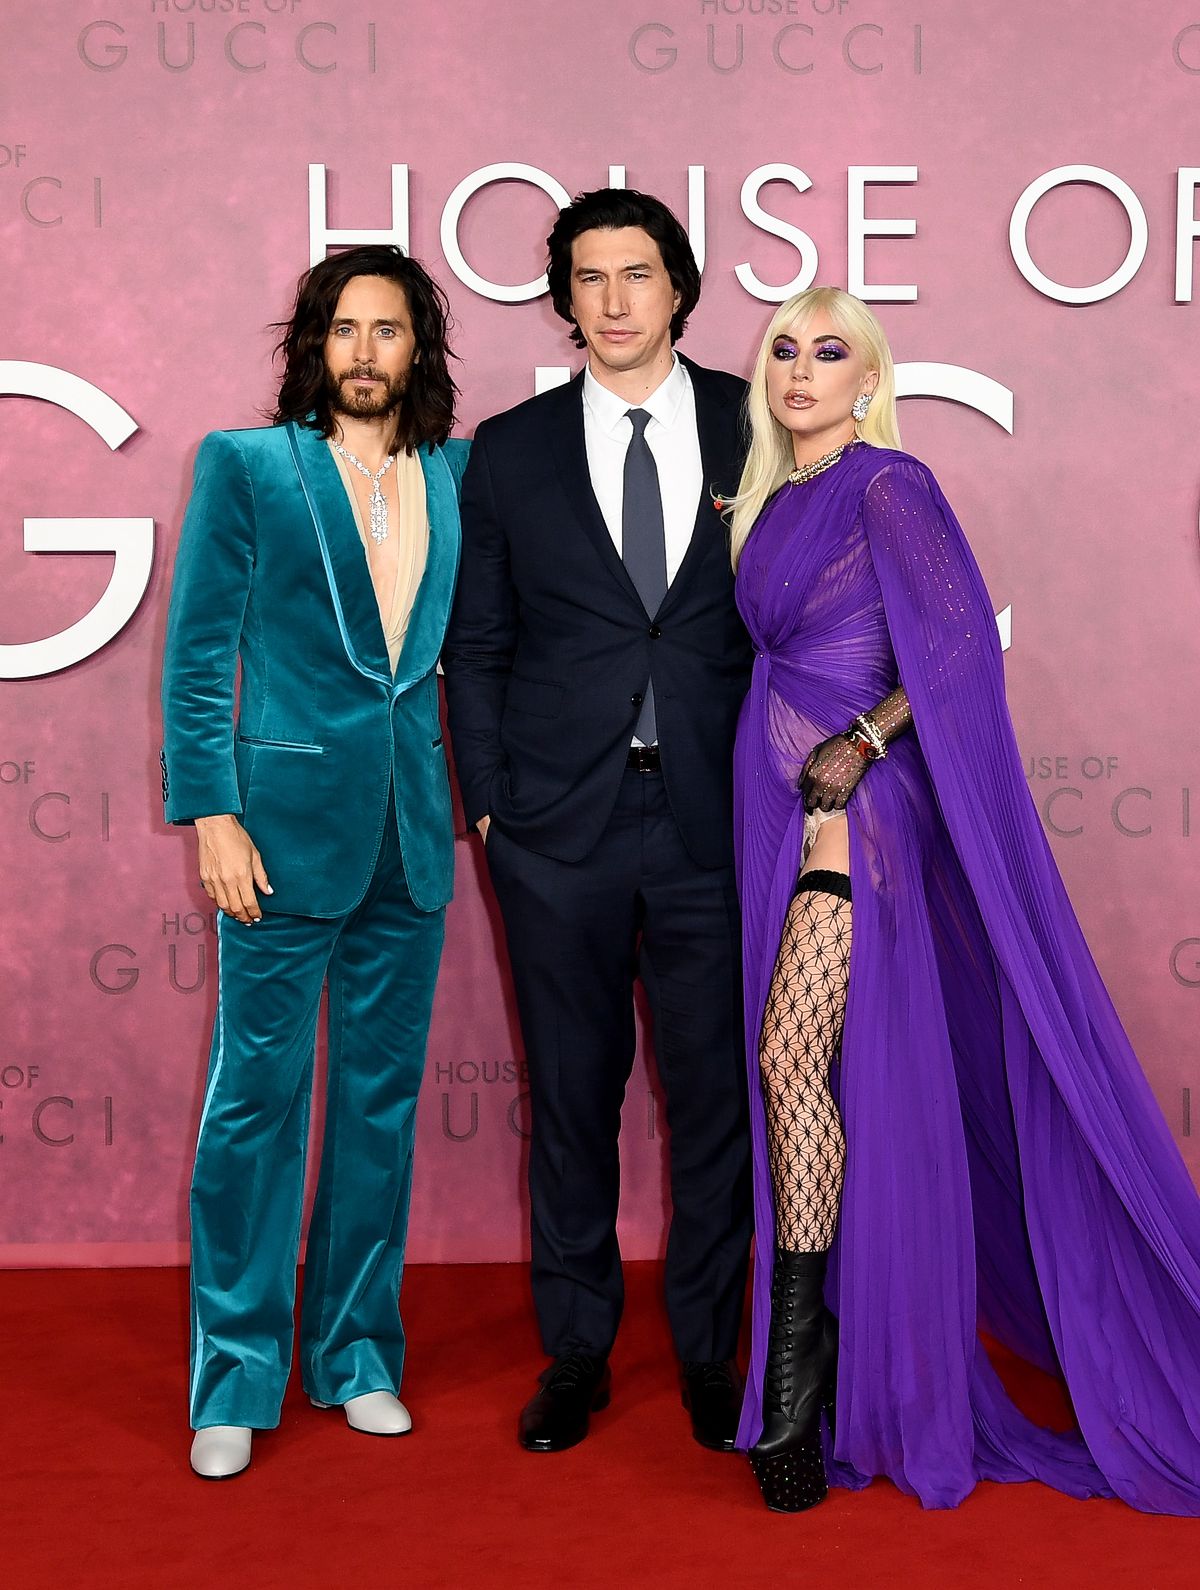 Джаред Лето, Адам Драйвер, Леди Гага на премьере фильма «Дом Gucci» в Лондоне